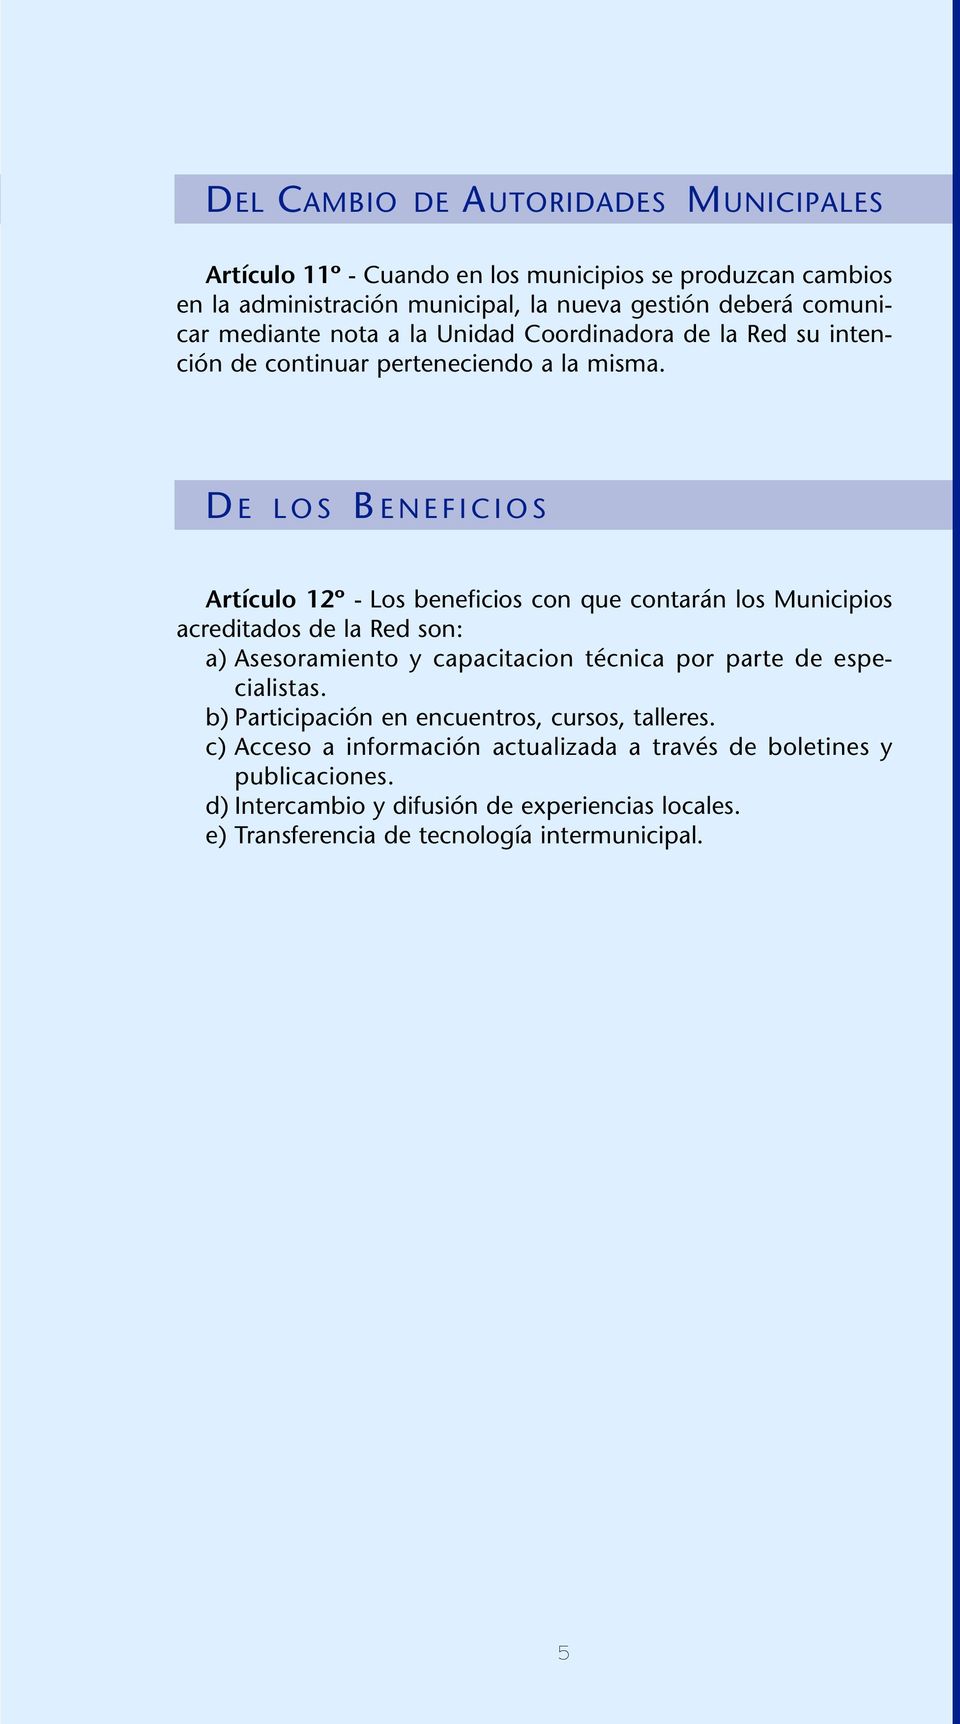 D E LOS B ENEFICIOS Artículo 12º - Los beneficios con que contarán los Municipios acreditados de la Red son: a) Asesoramiento y capacitacion técnica por parte de